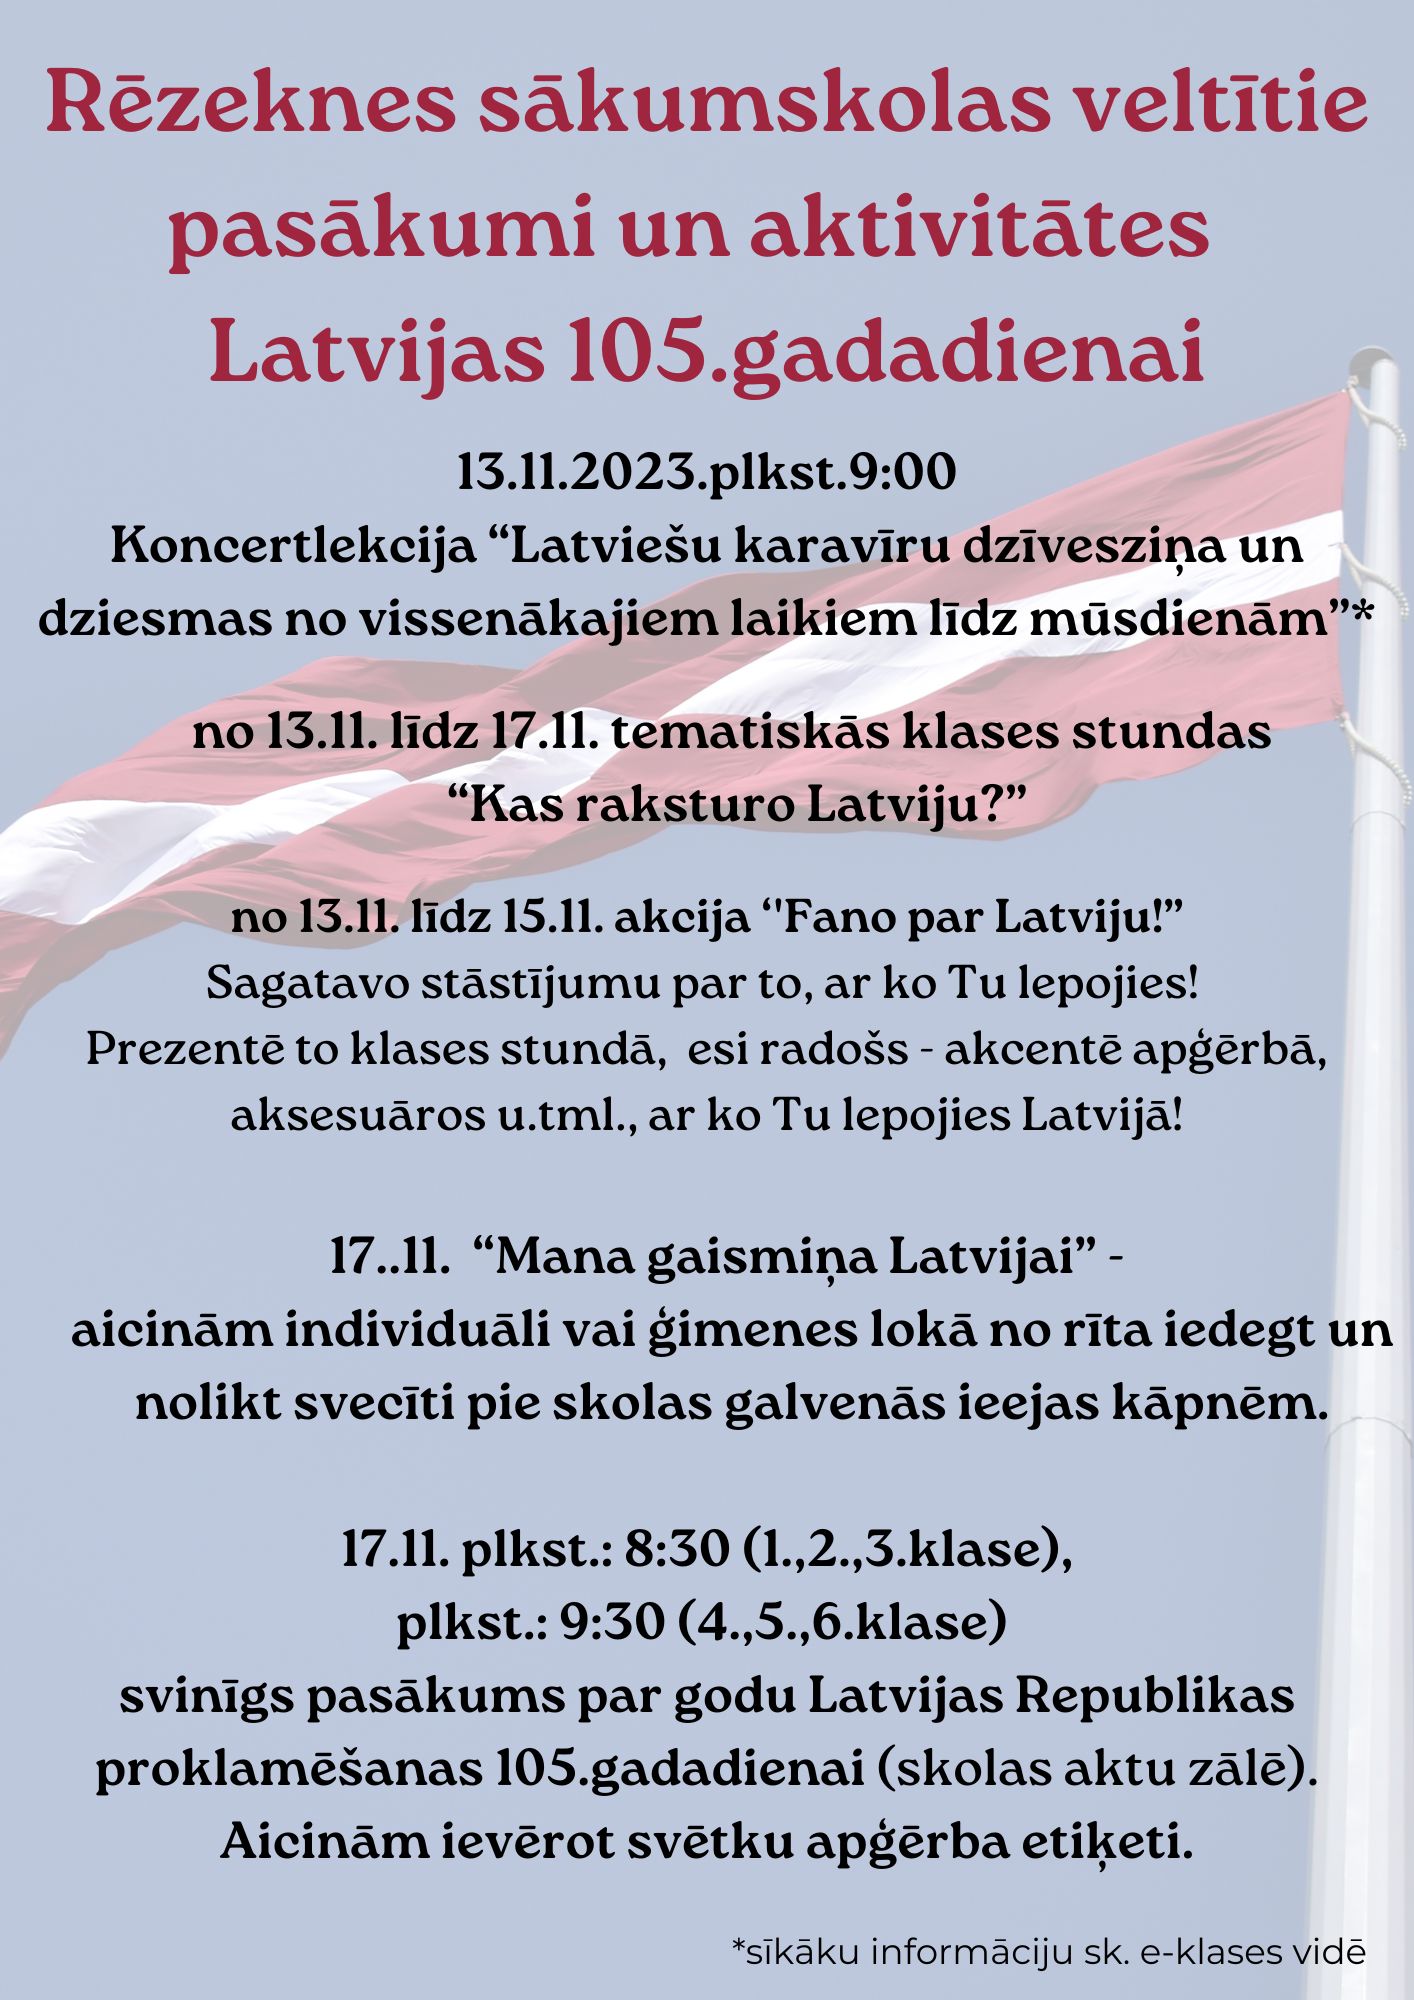 _Rēzeknes sākumskolas veltītie pasākumi un aktivitātes Latvijas 105.gadadienai